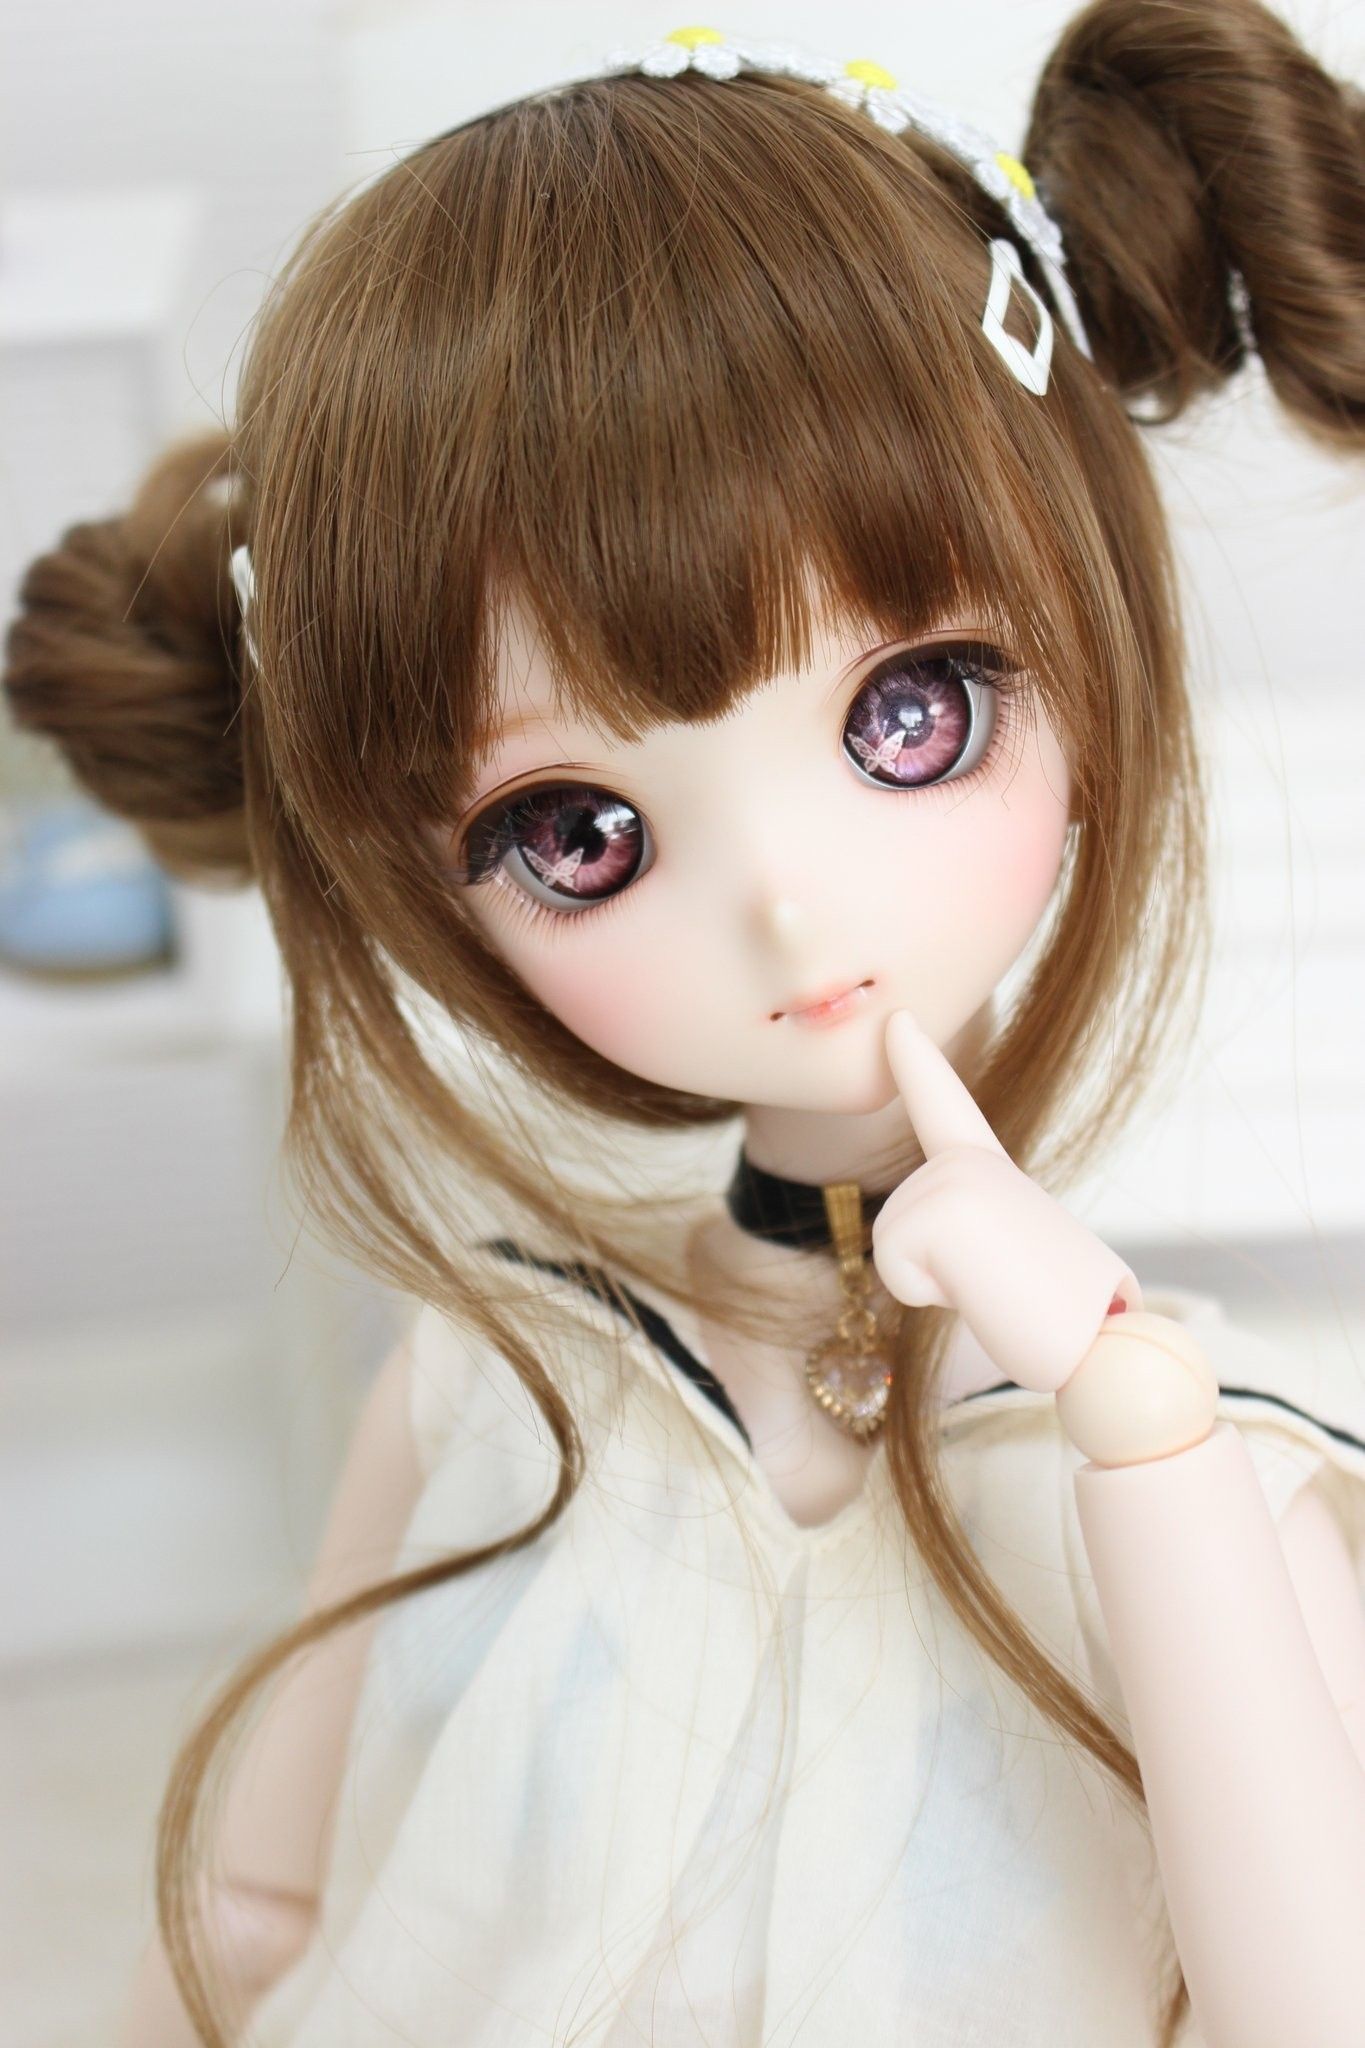 Anime, Doll, Kawaii, Smart Doll, Dollfie, BJD. Anime dolls, Cute dolls, Fashion dolls